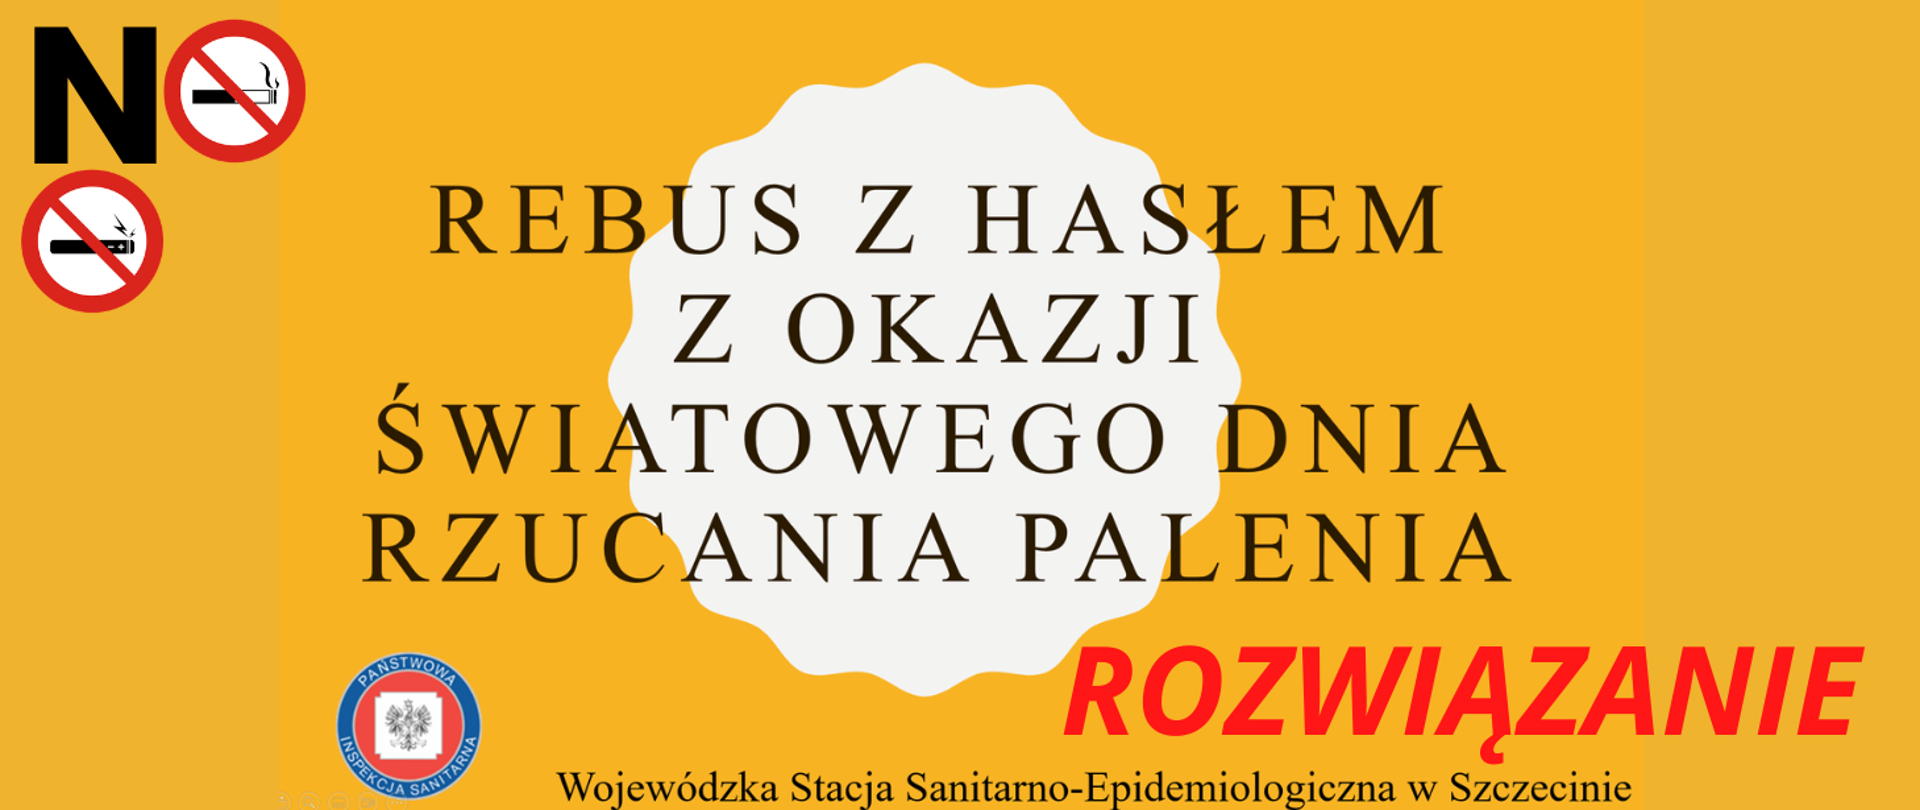 Grafika przedstawia napis związany z tematyką konkursu- Rebus z hasłem z okazji Światowego Dnia Rzucania Palenia. Wojewódzka Stacja Sanitarno-Epidemiologiczna w Szczecinie.